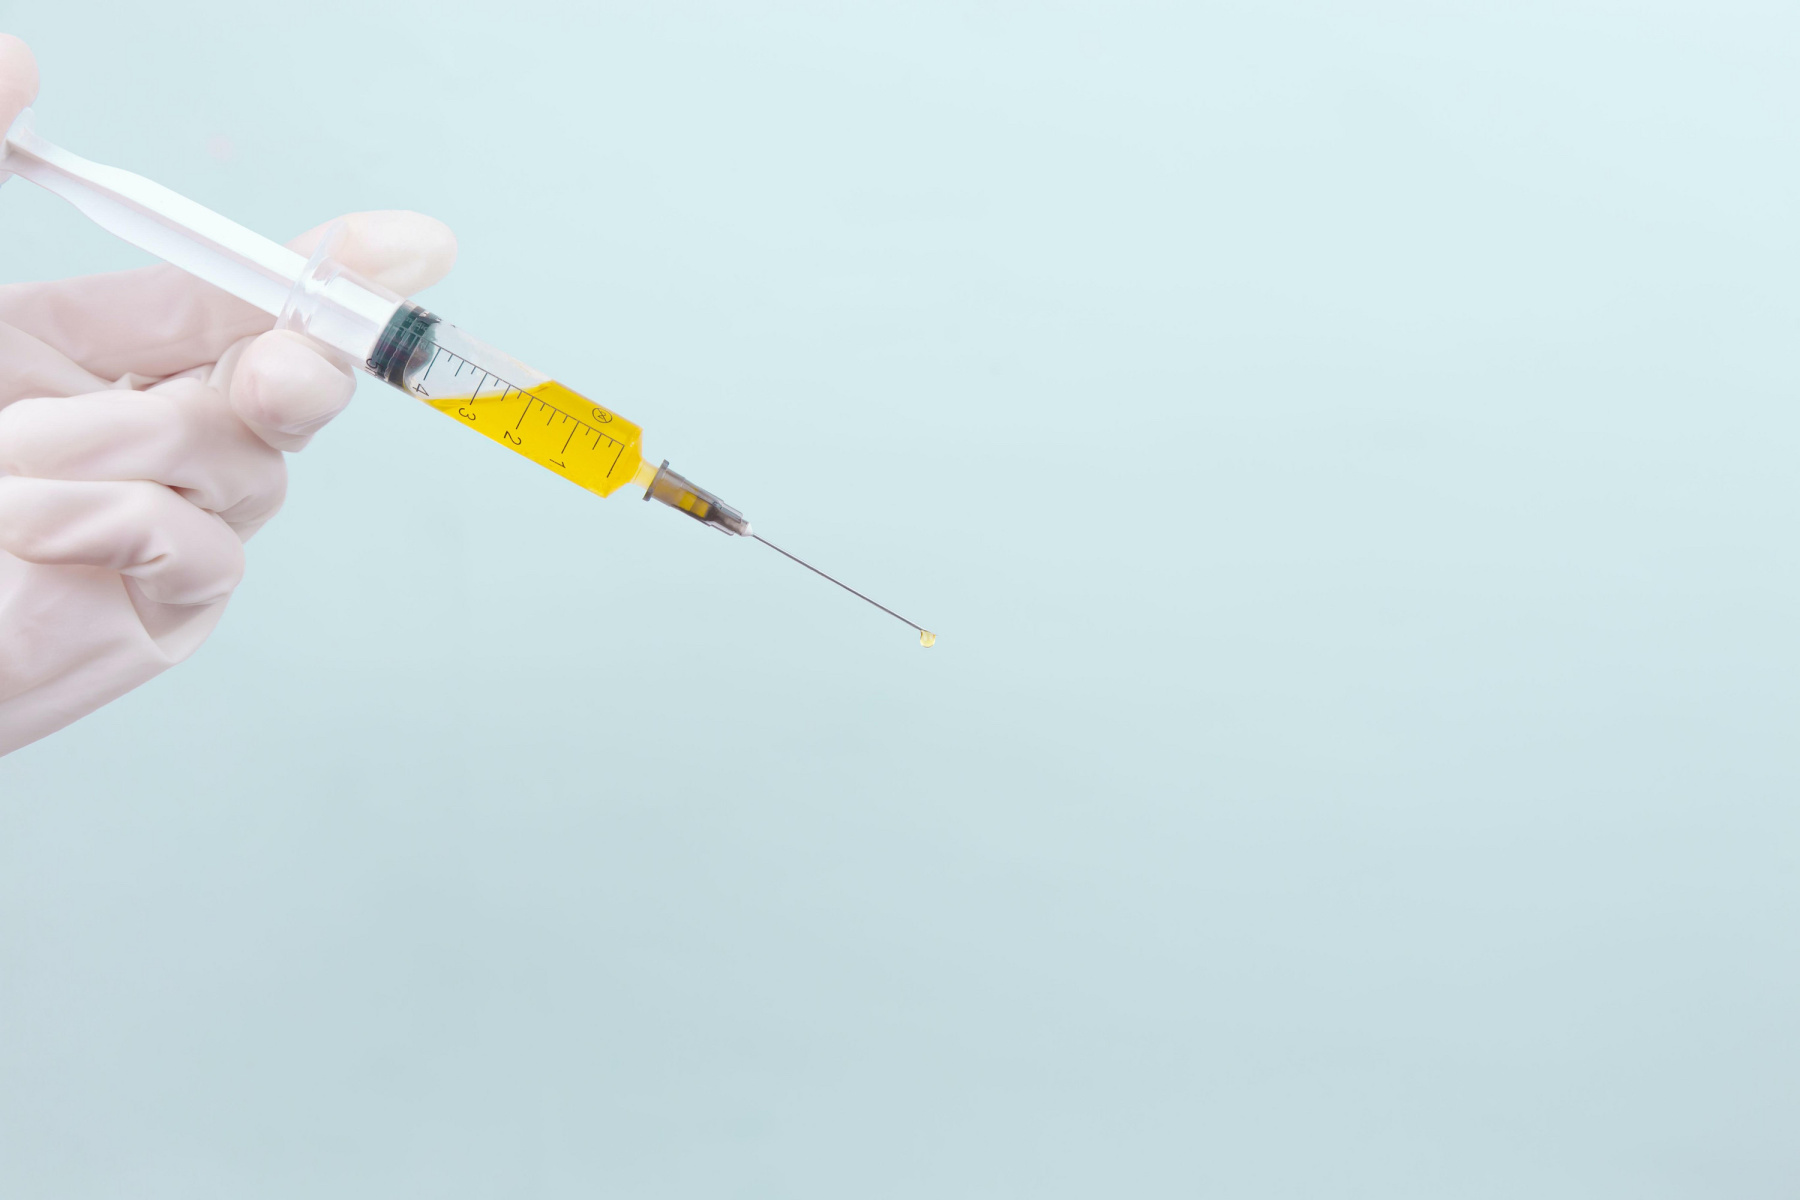 Une seringue dédiée au juste dosage